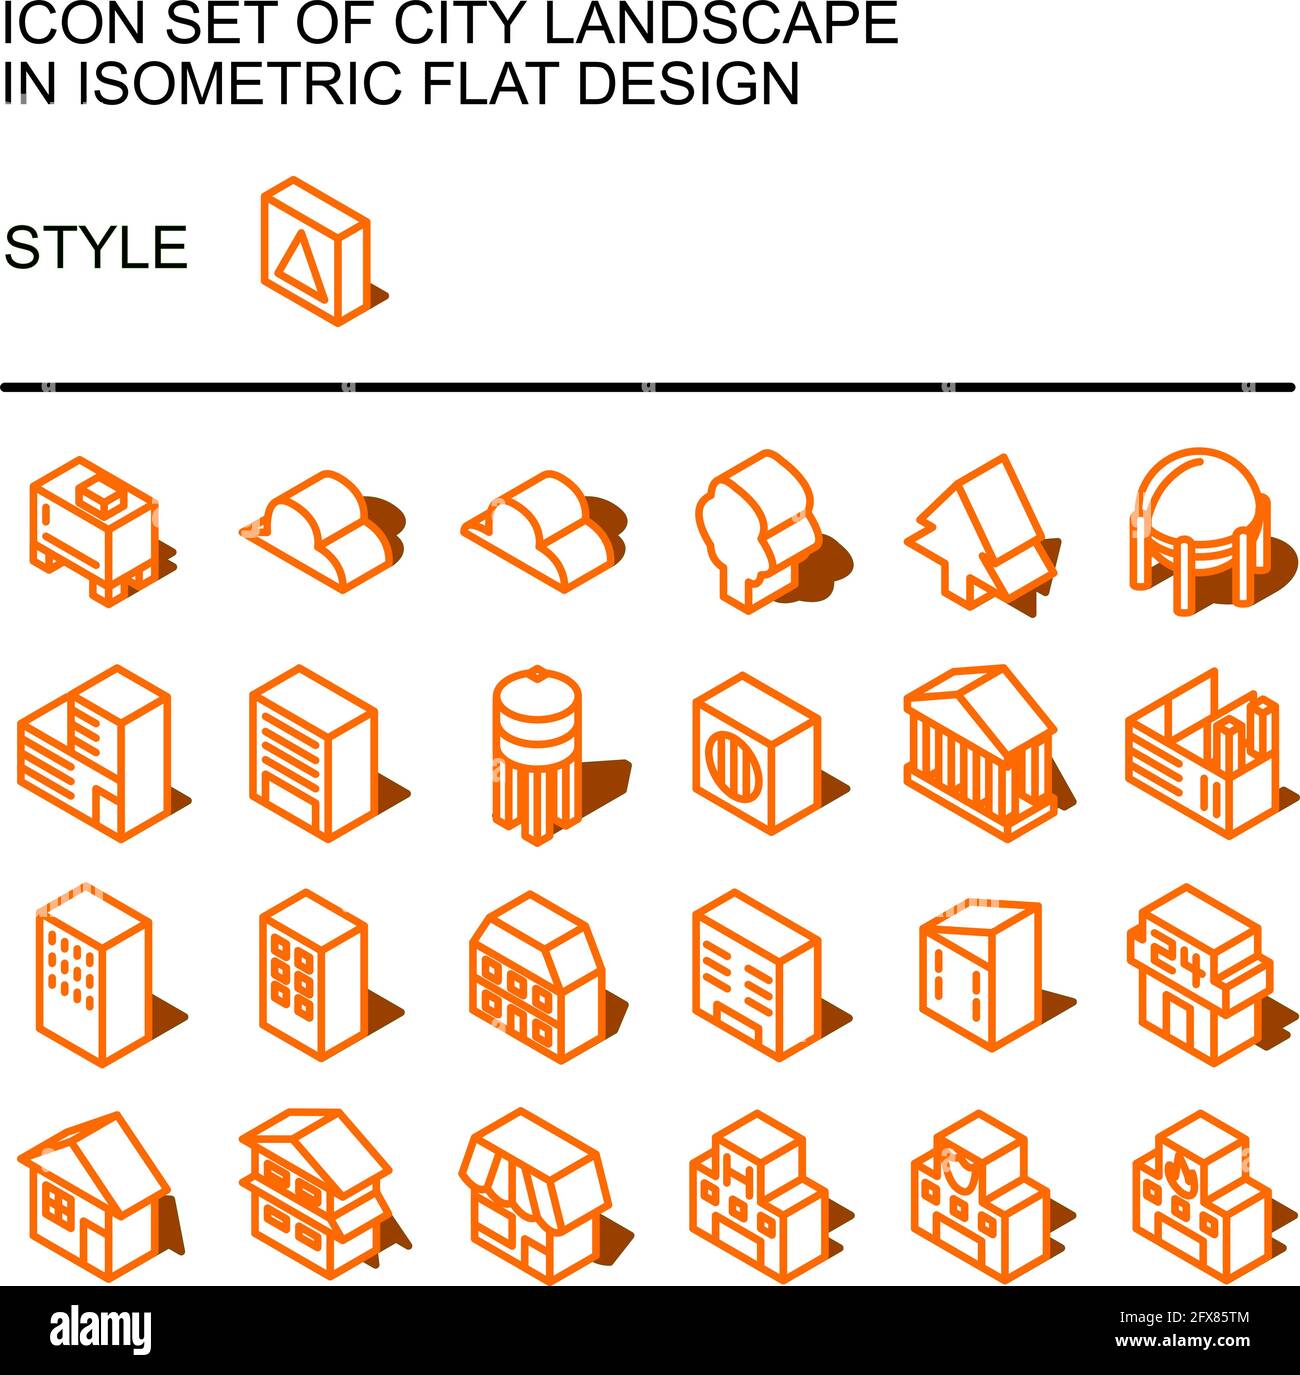 Icona del paesaggio urbano in un design piatto isometrico con linee arancioni, riempimenti bianchi, forma di un'ombra. Illustrazione Vettoriale